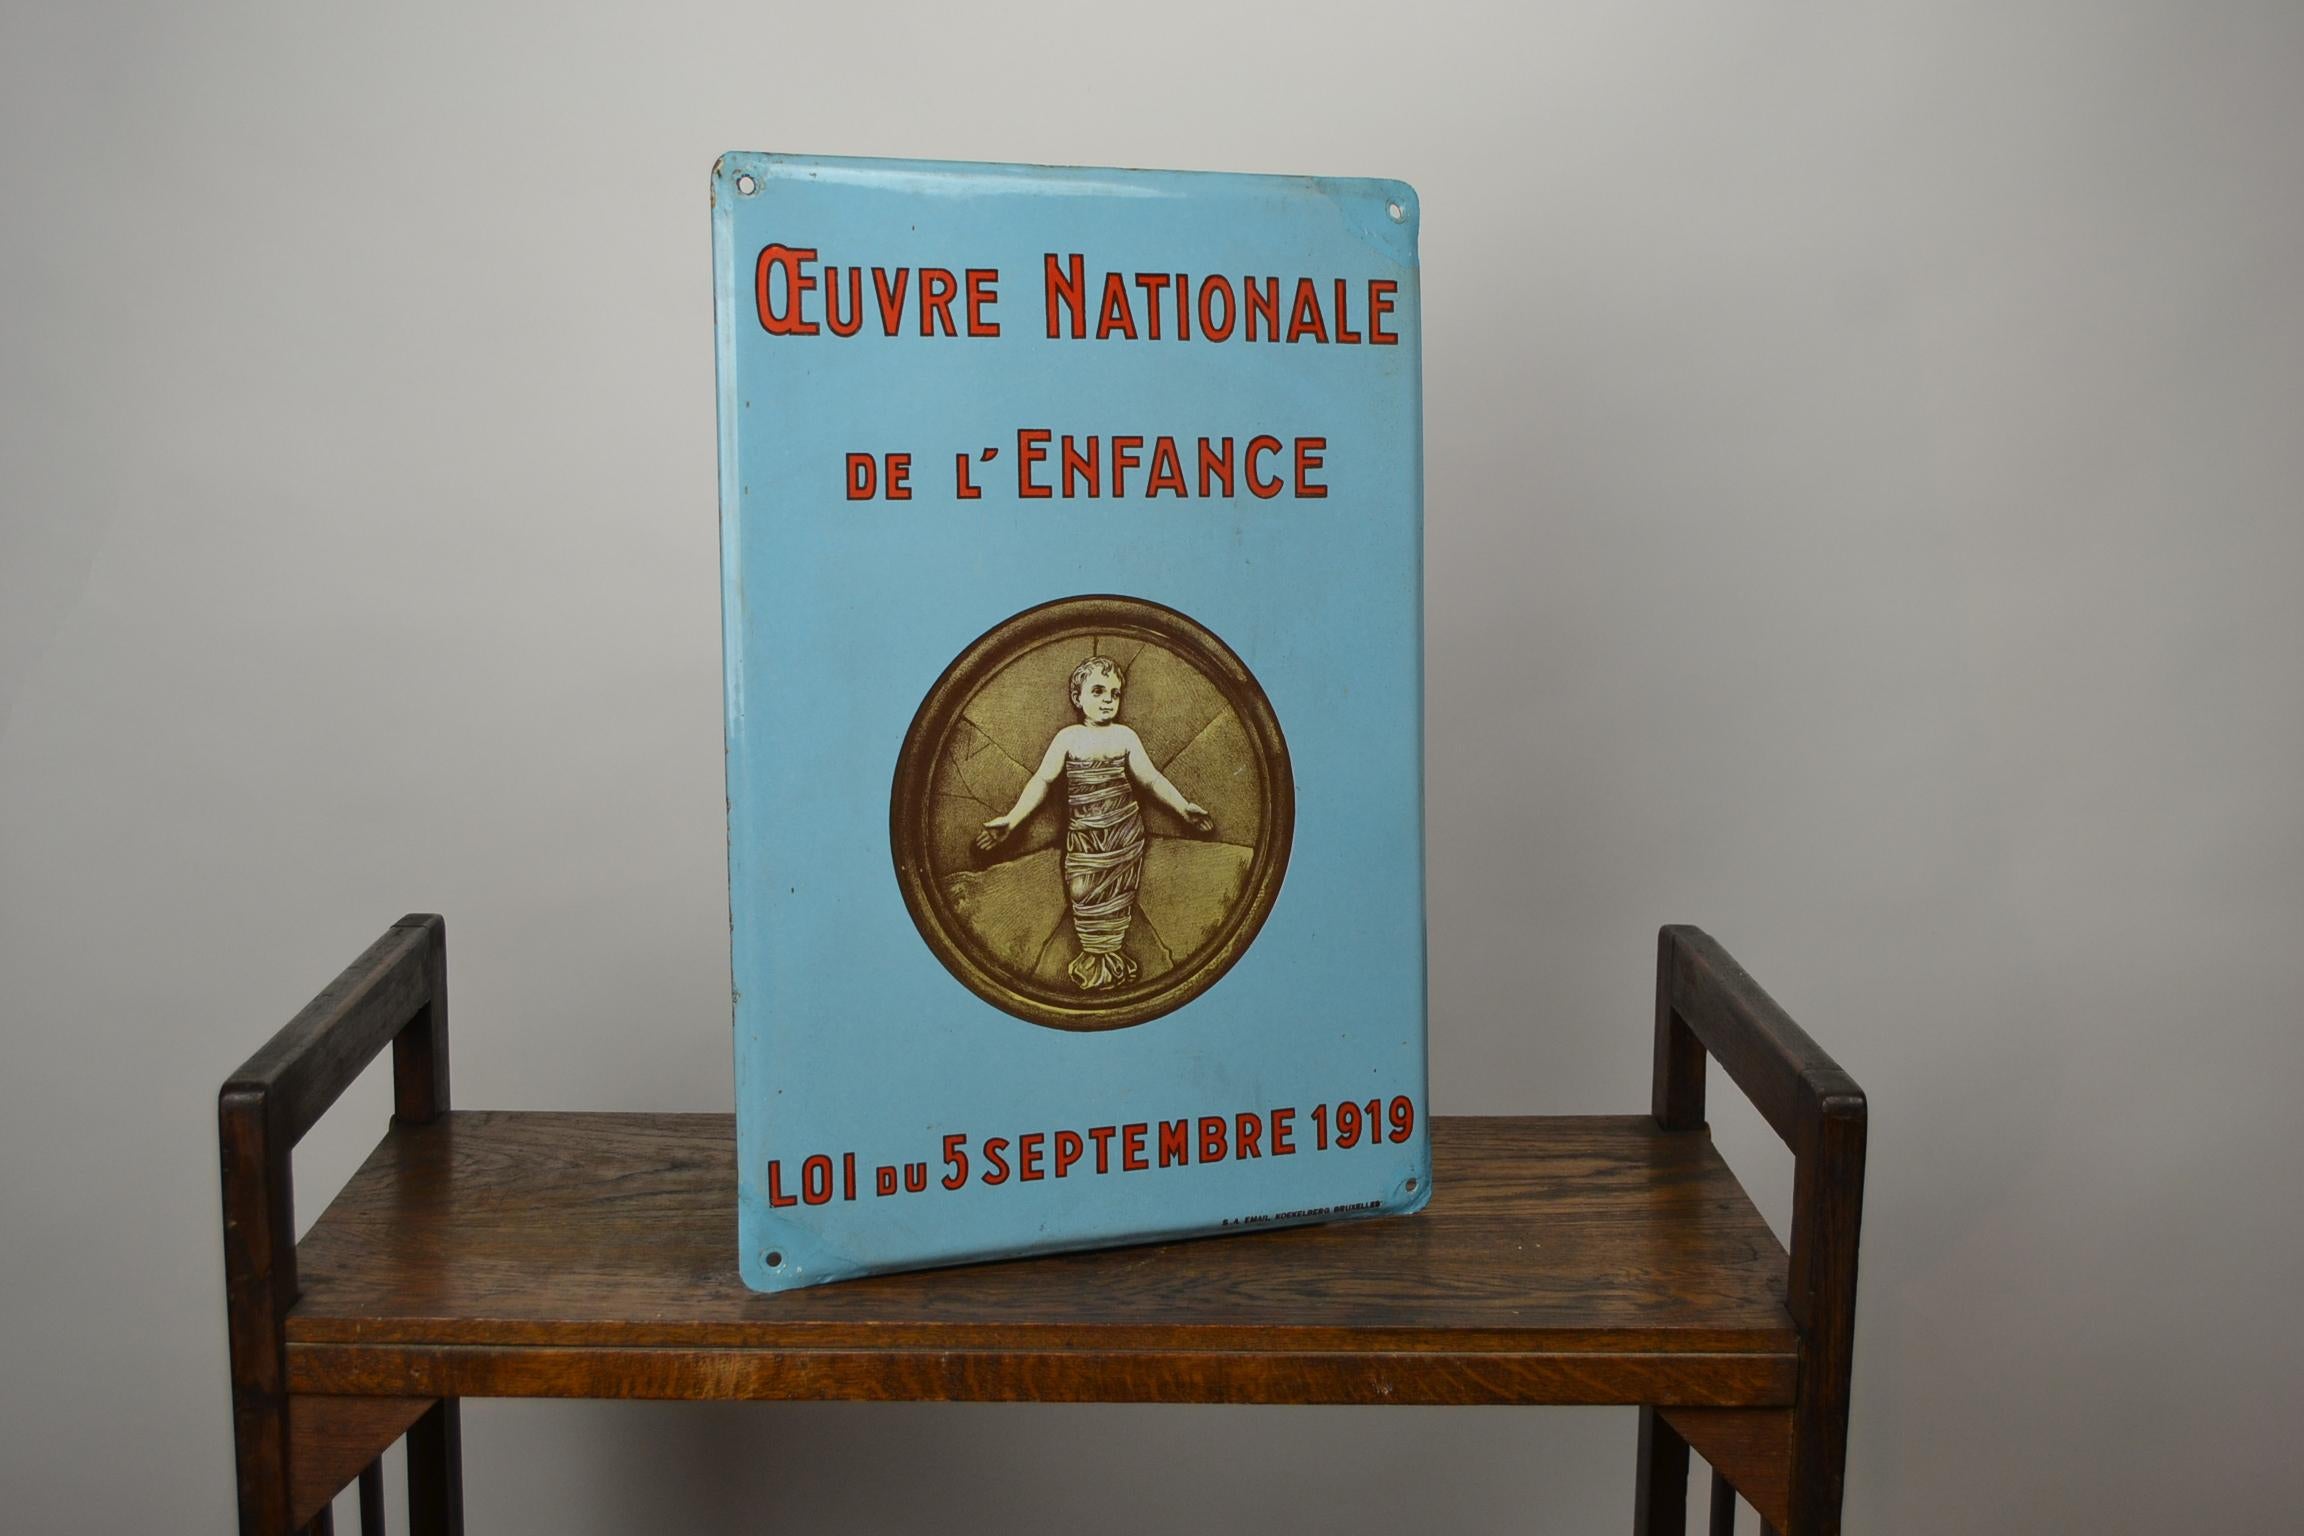 Vintage Enamel Advertising Sign, Oeuvre Nationale de L' Enfance 4